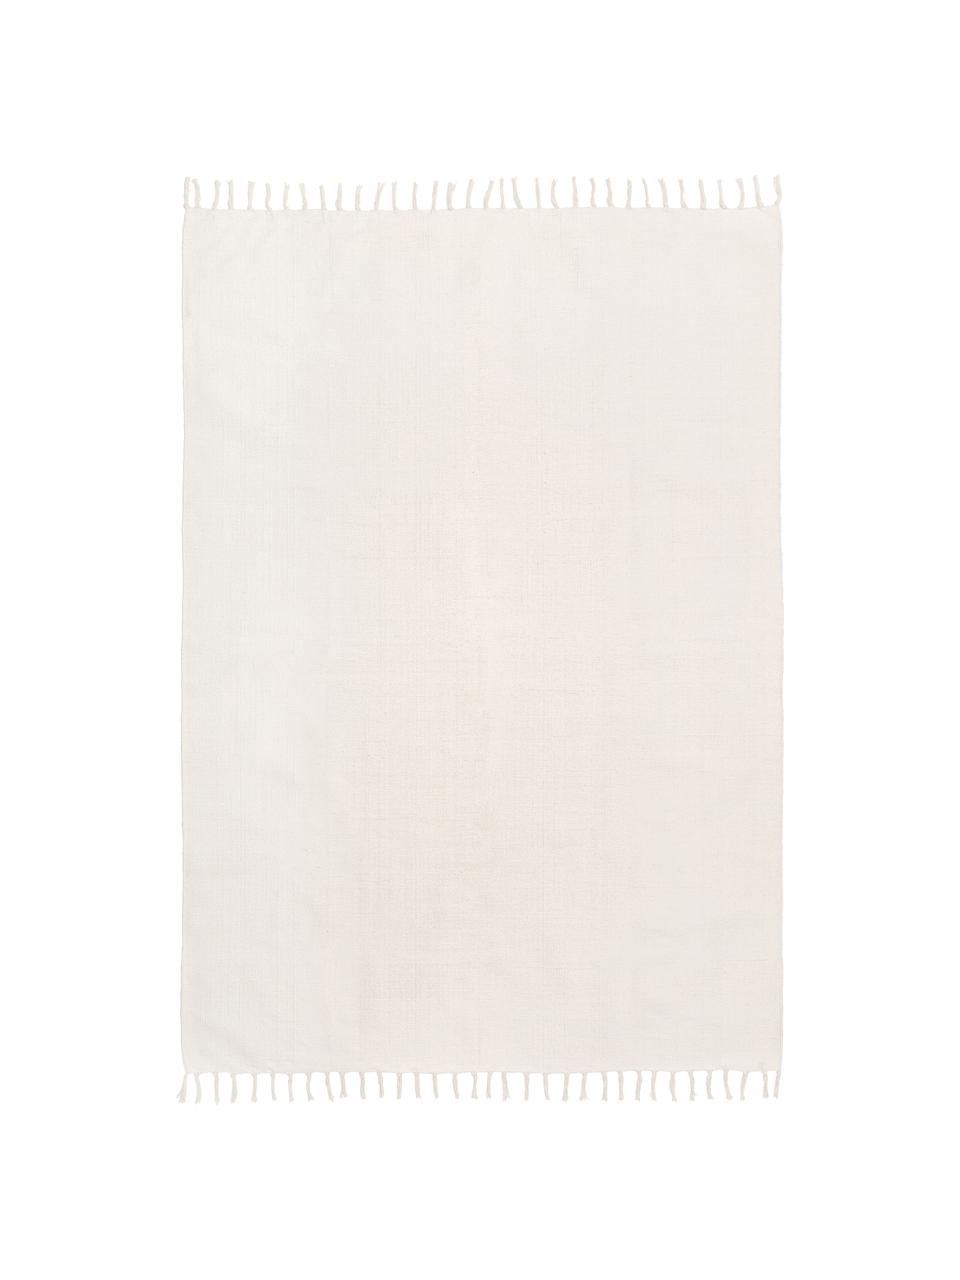 Tappeto sottile in cotone biaco crema tessuto a mano Agneta, 100% cotone, Bianco crema, Larg. 200 x Lung. 300 cm (taglia L)